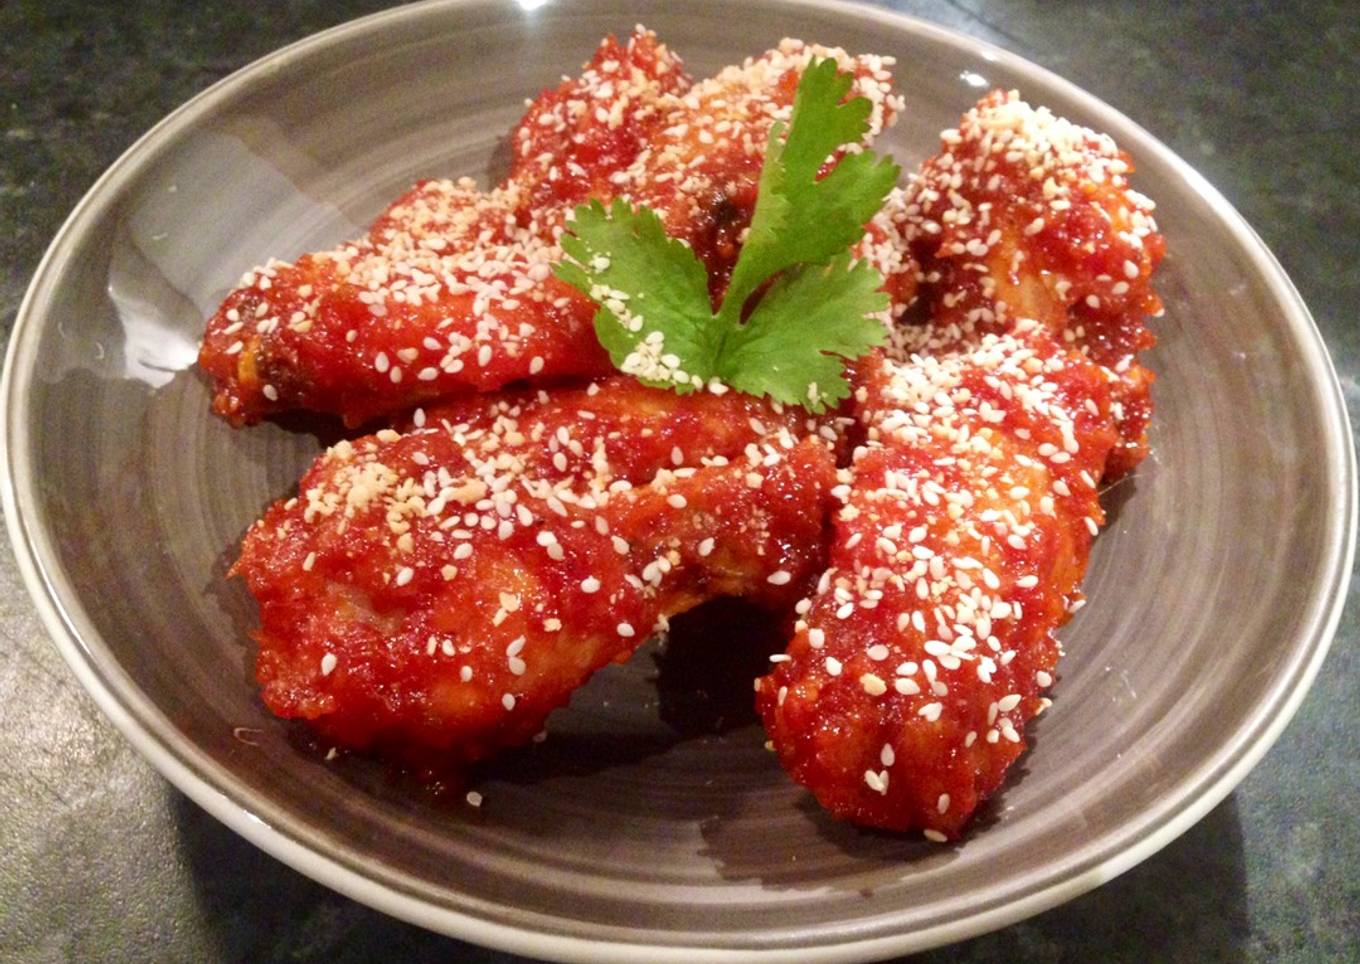 Spicy Korean fried chicken